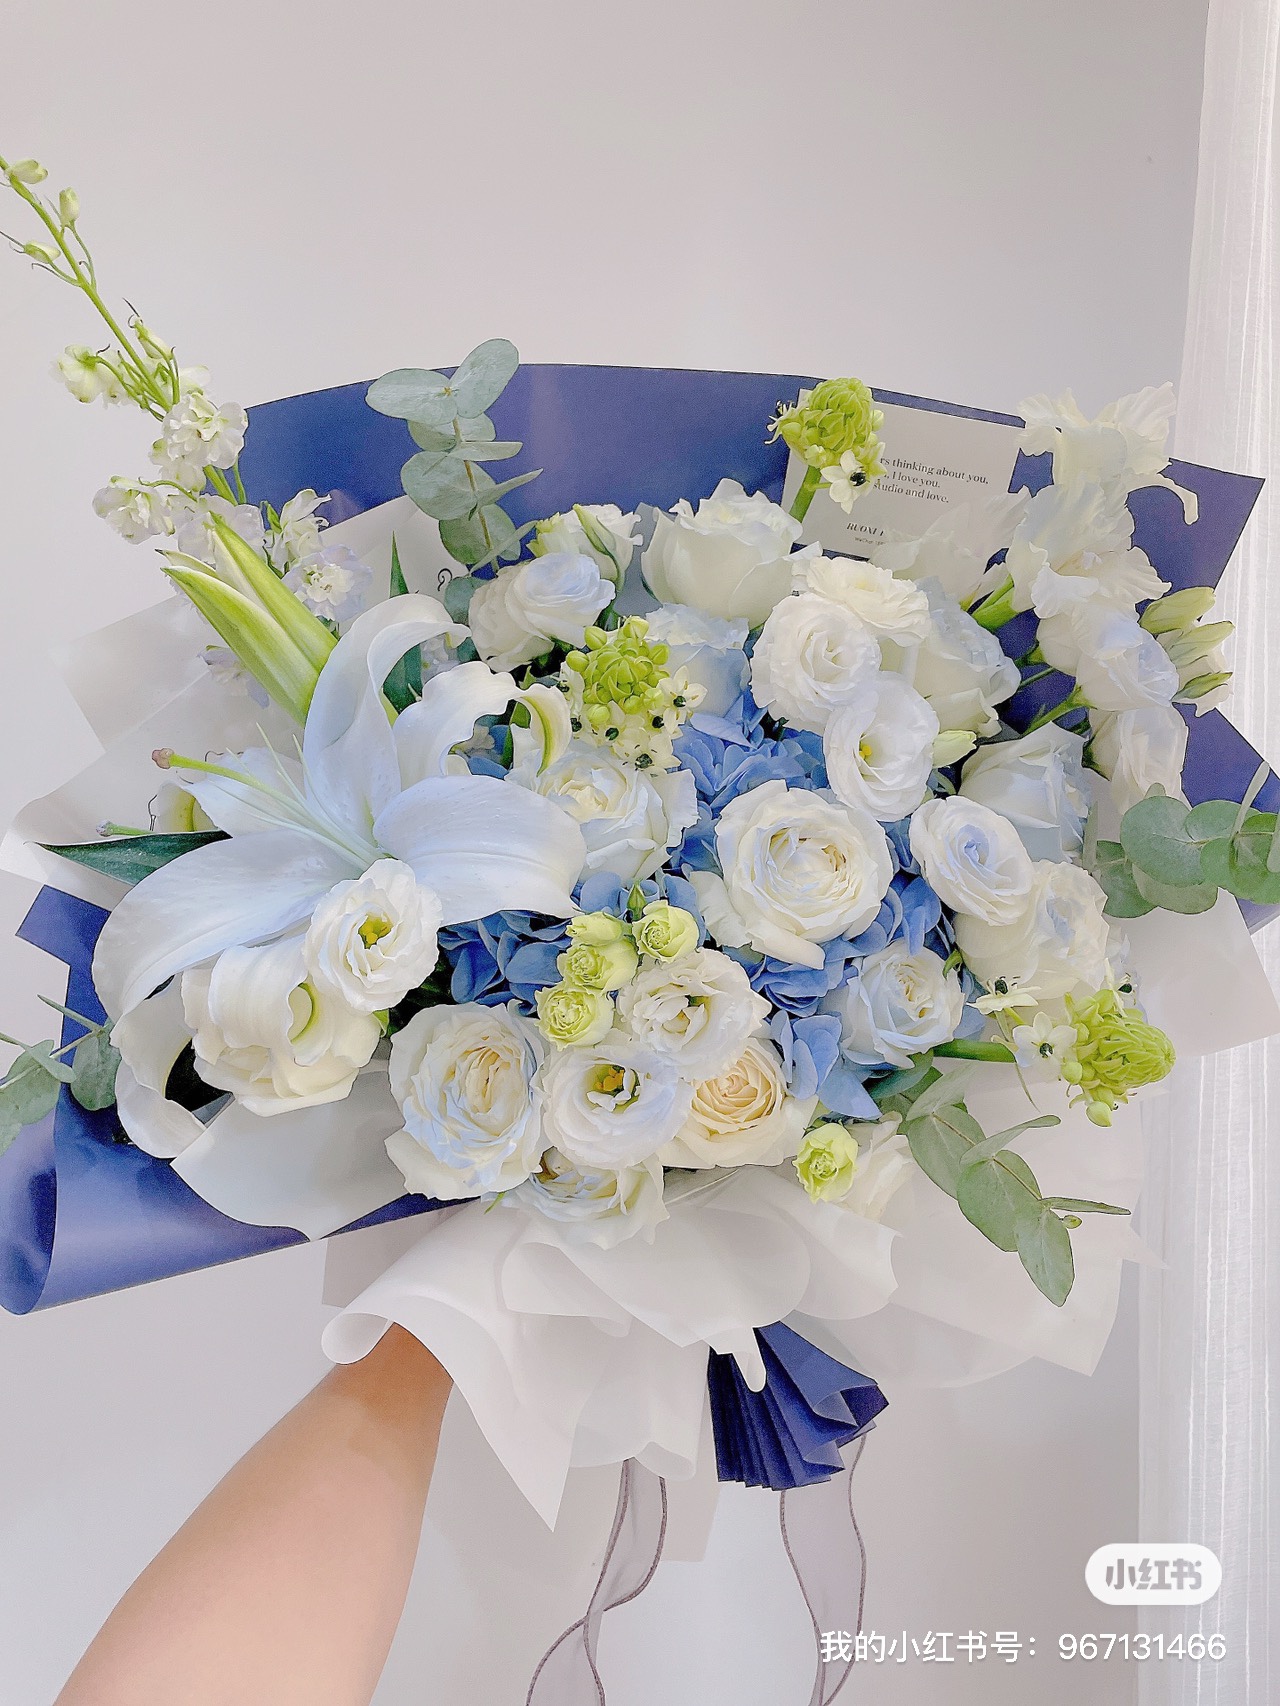 蓝白色绣球百合混搭清新花束鲜花速递专人送只送广西柳州市区包邮